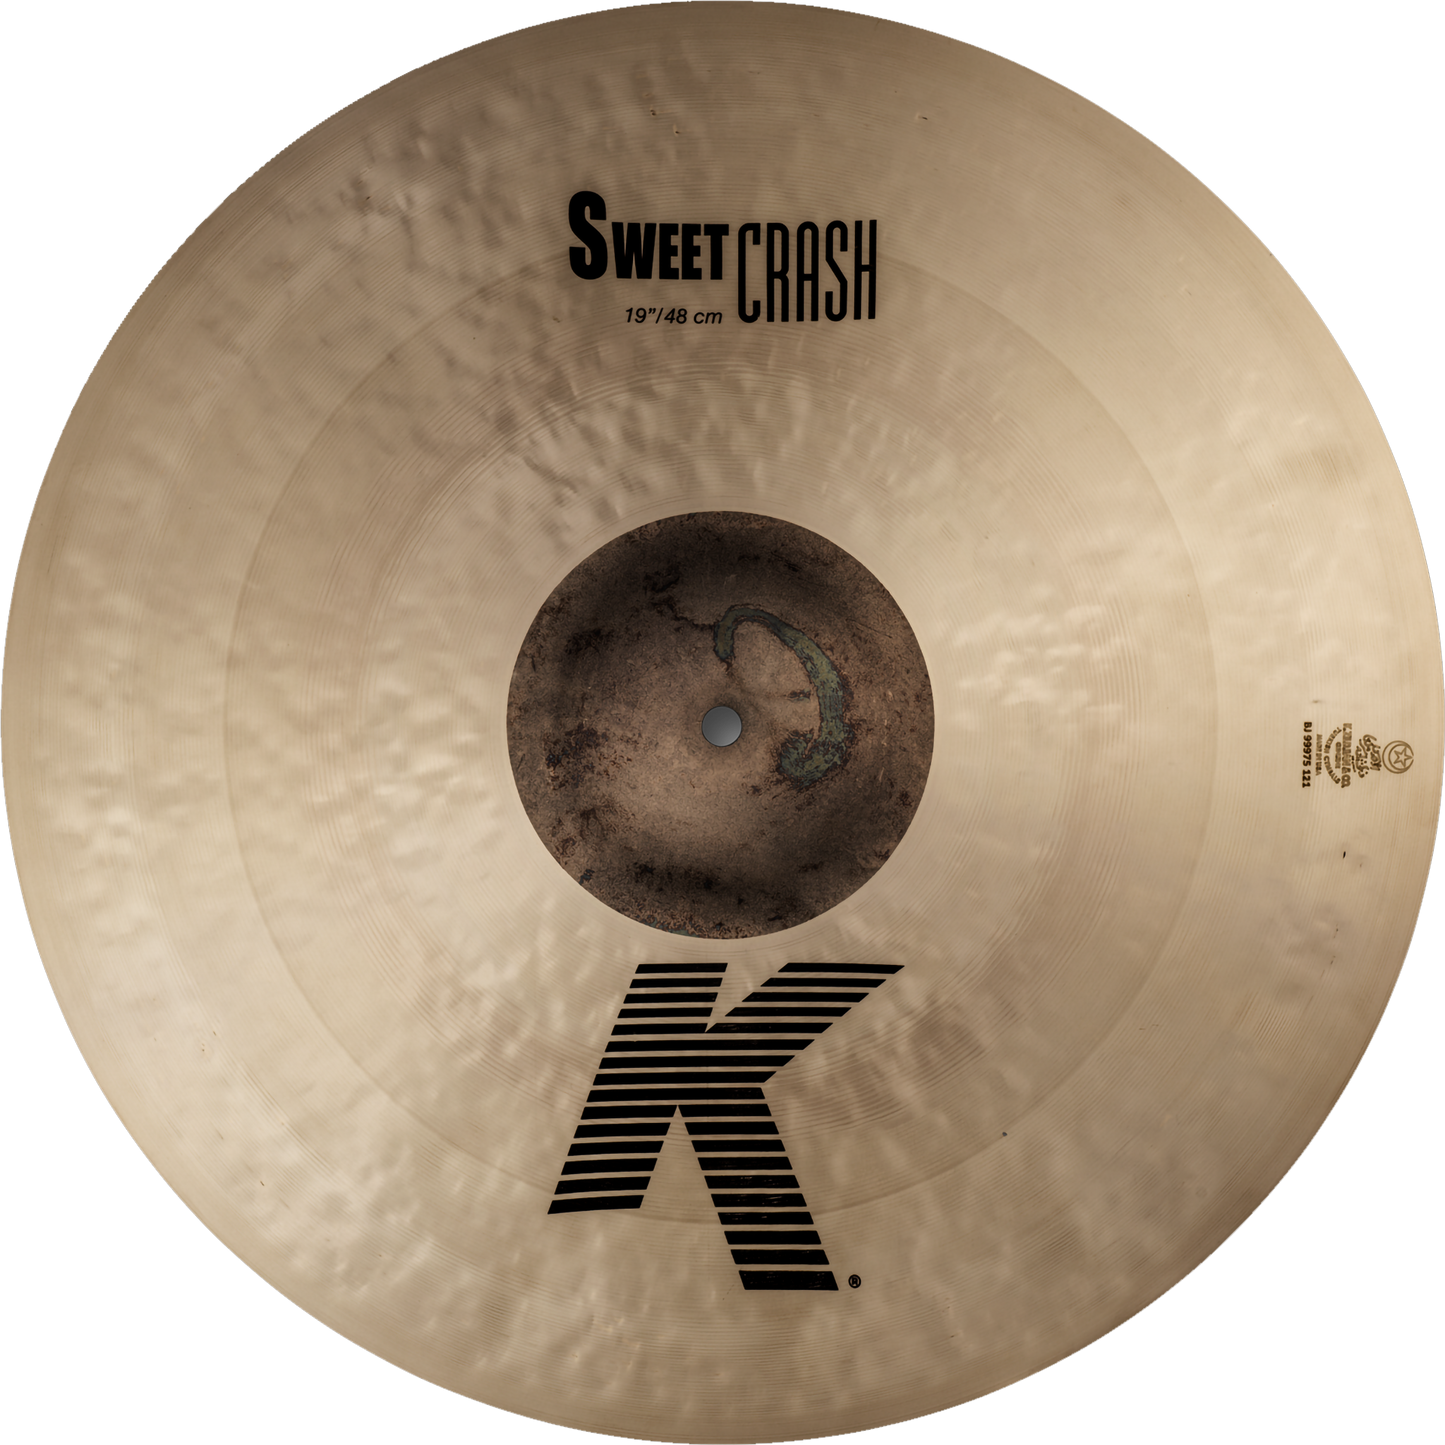 Zildjian 19" K Zildjian Sweet Crash Cymbal